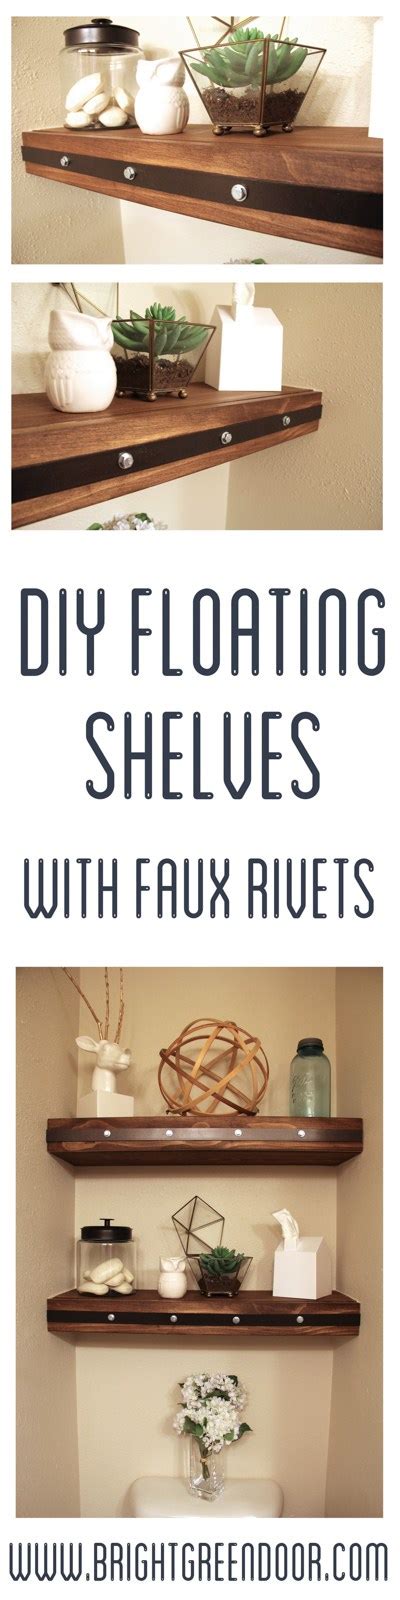 Diy Floating Shelves With Faux Rivets Floating Shelves Diy Floating